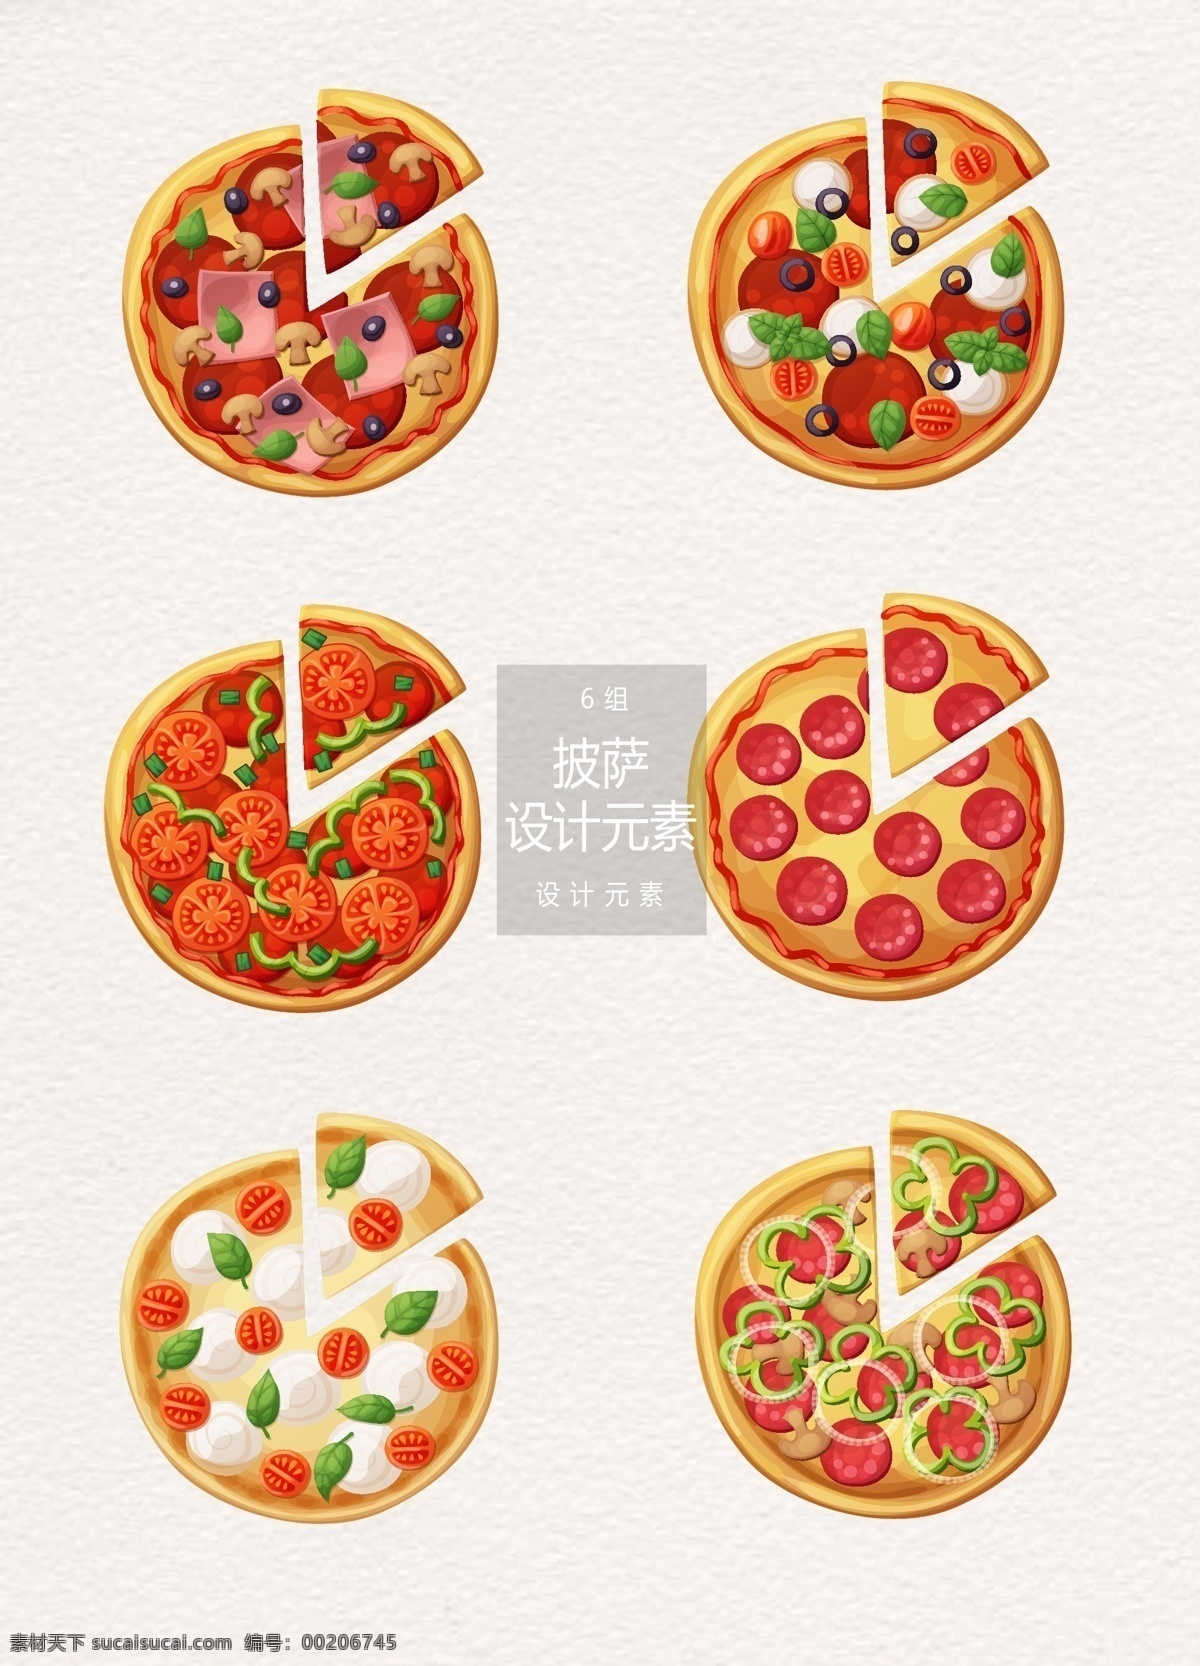 披萨 俯视图 元素 设计元素 披萨元素 快餐食物 美食 披萨俯视图 快餐